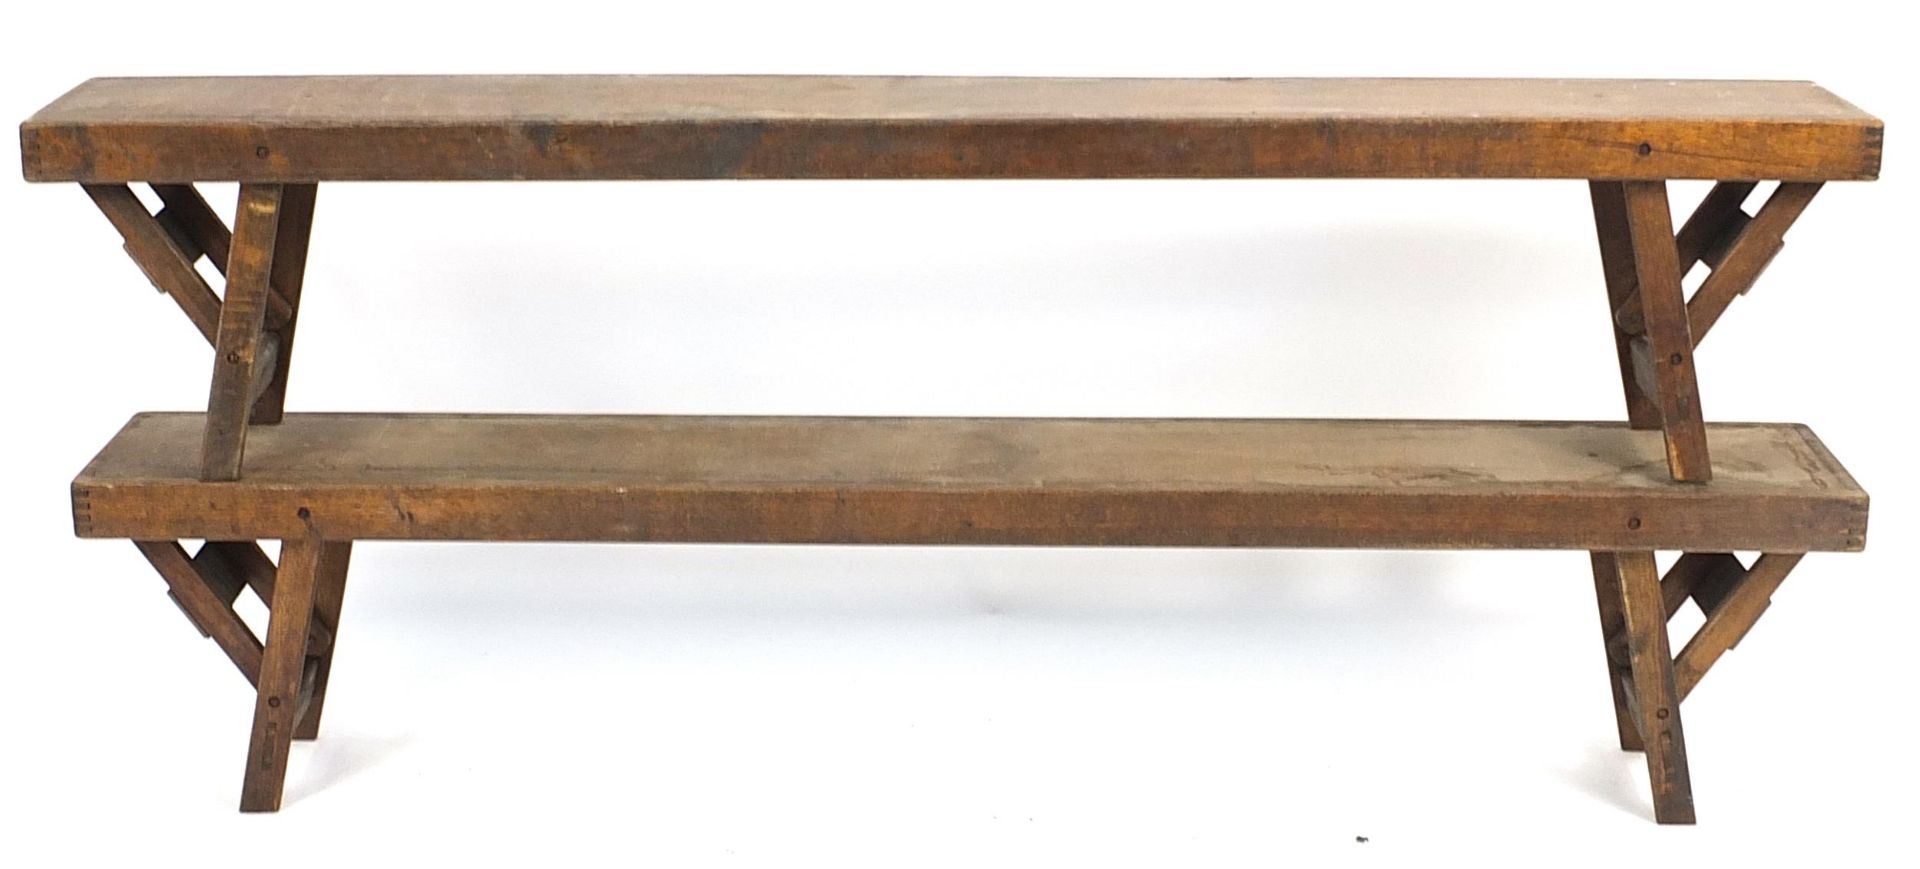 Pair of vintage folding gymnasium benches, 38cm H x 183cm W x 25cm D